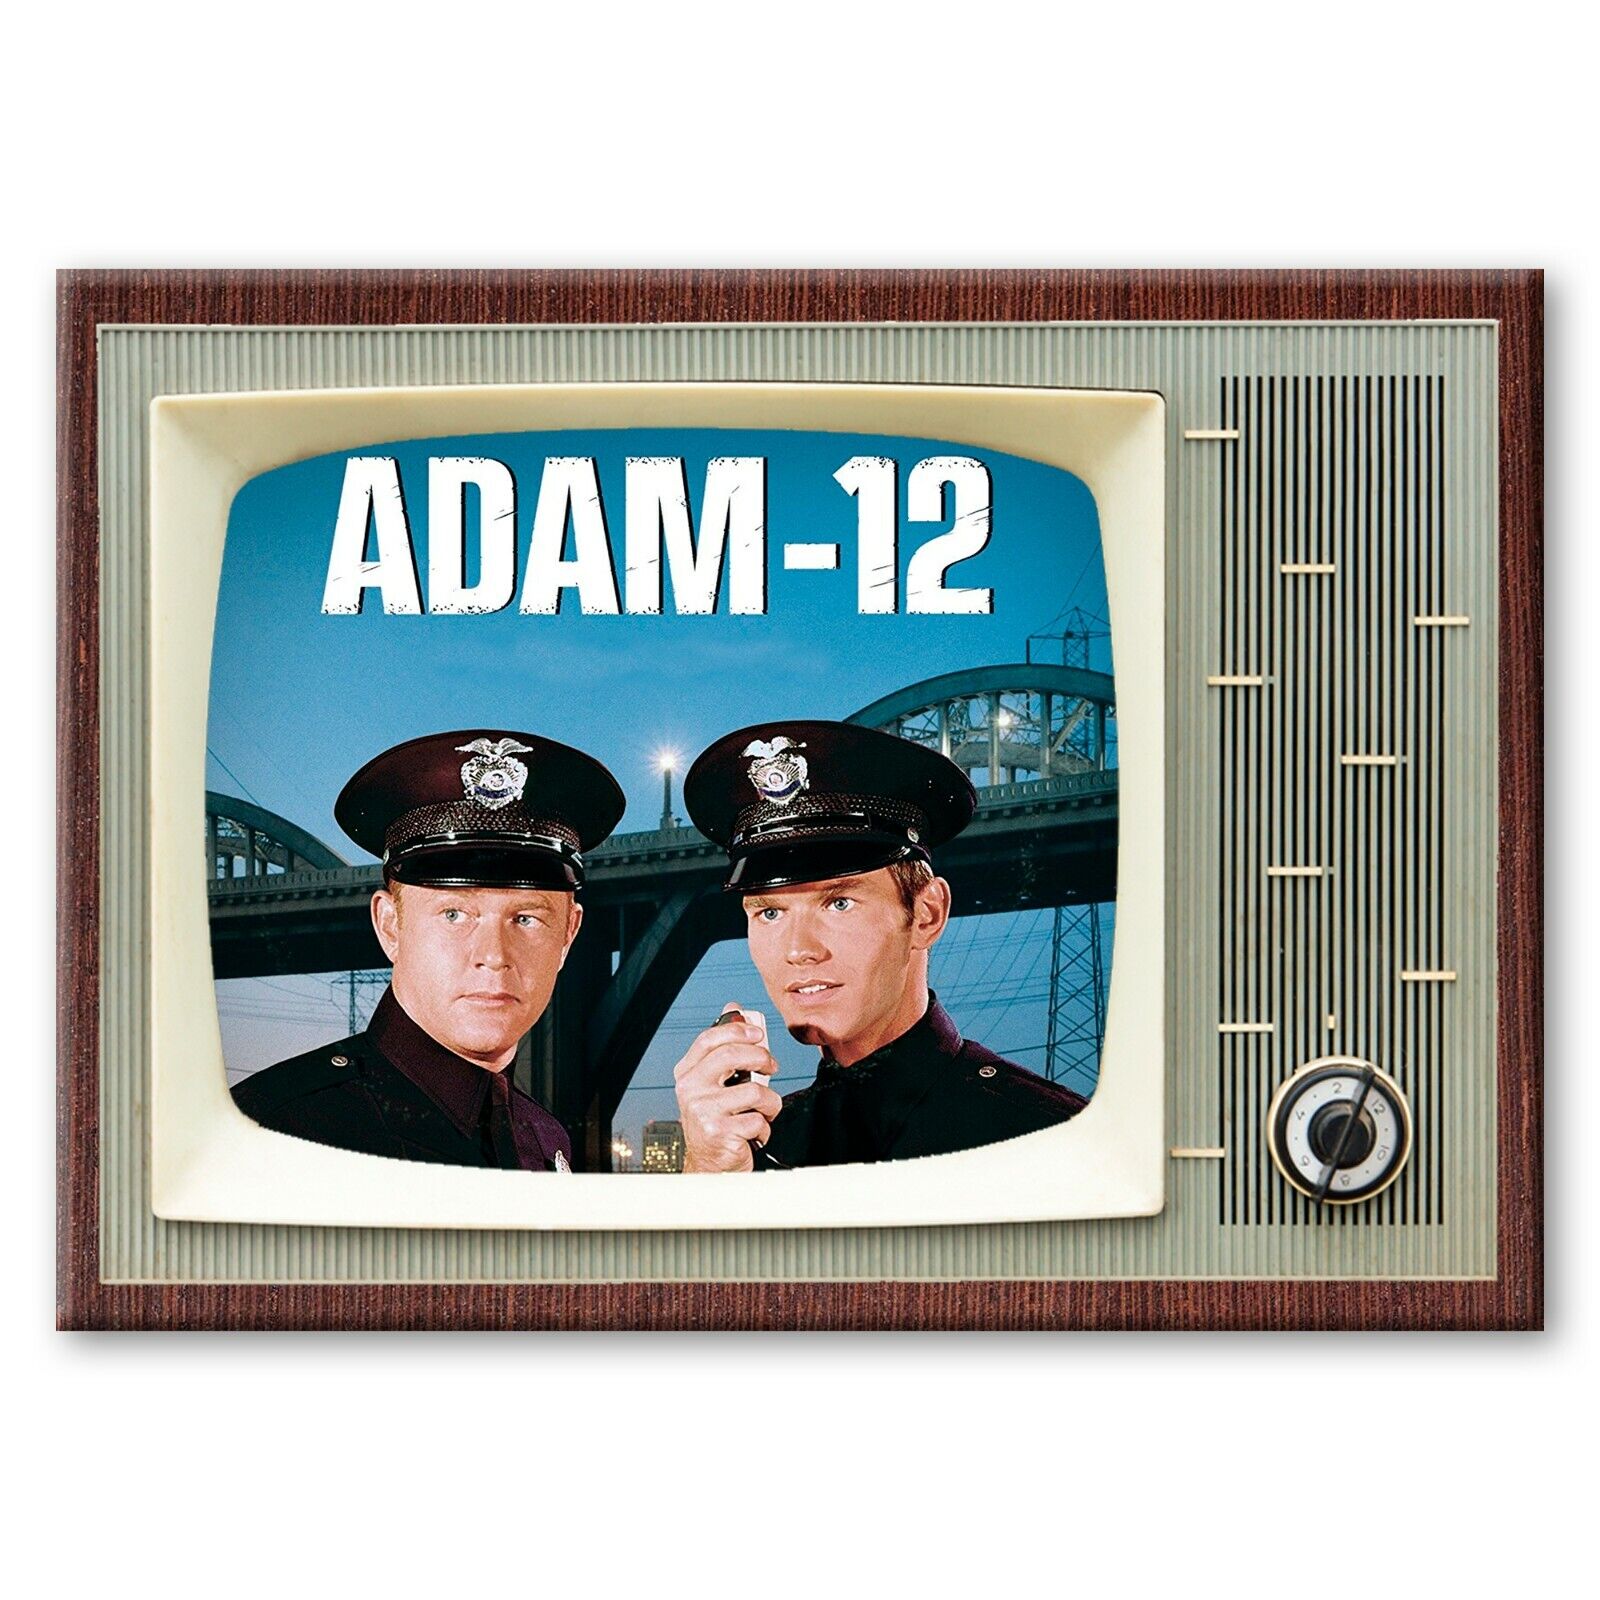 ADAM 12 TV Show Classic TV 3.5 inches x 2.5 inches Steel FRIDGE MAGNET Retro